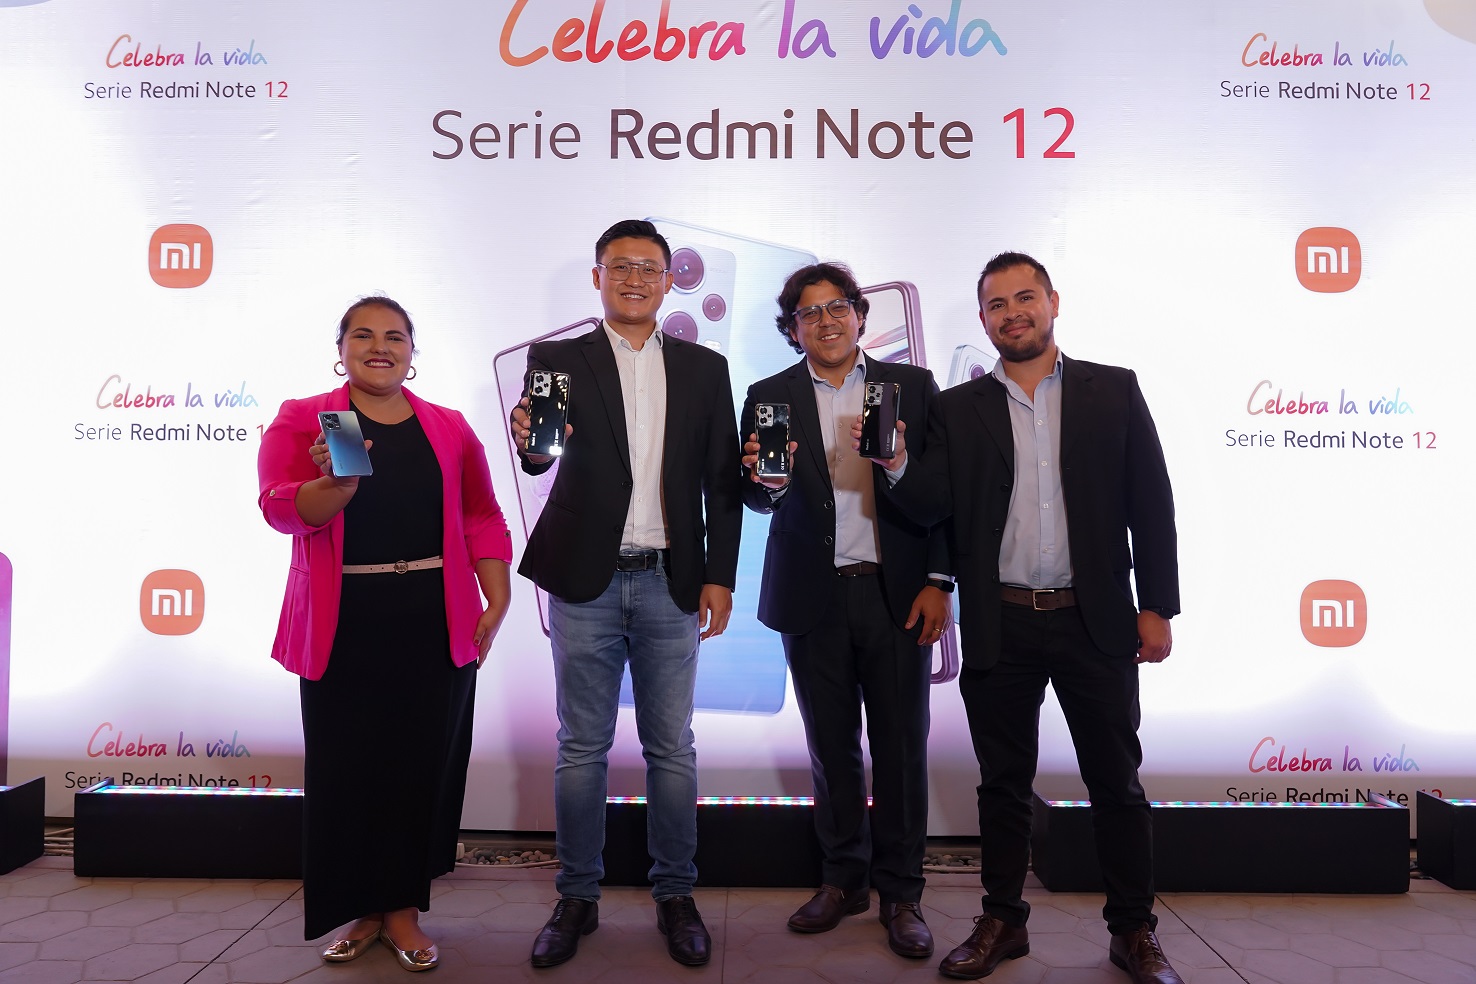 Foto de ¡Celebra la vida! Xiaomi festejó su lanzamiento de su línea de celulares Redmi Note 12 Series